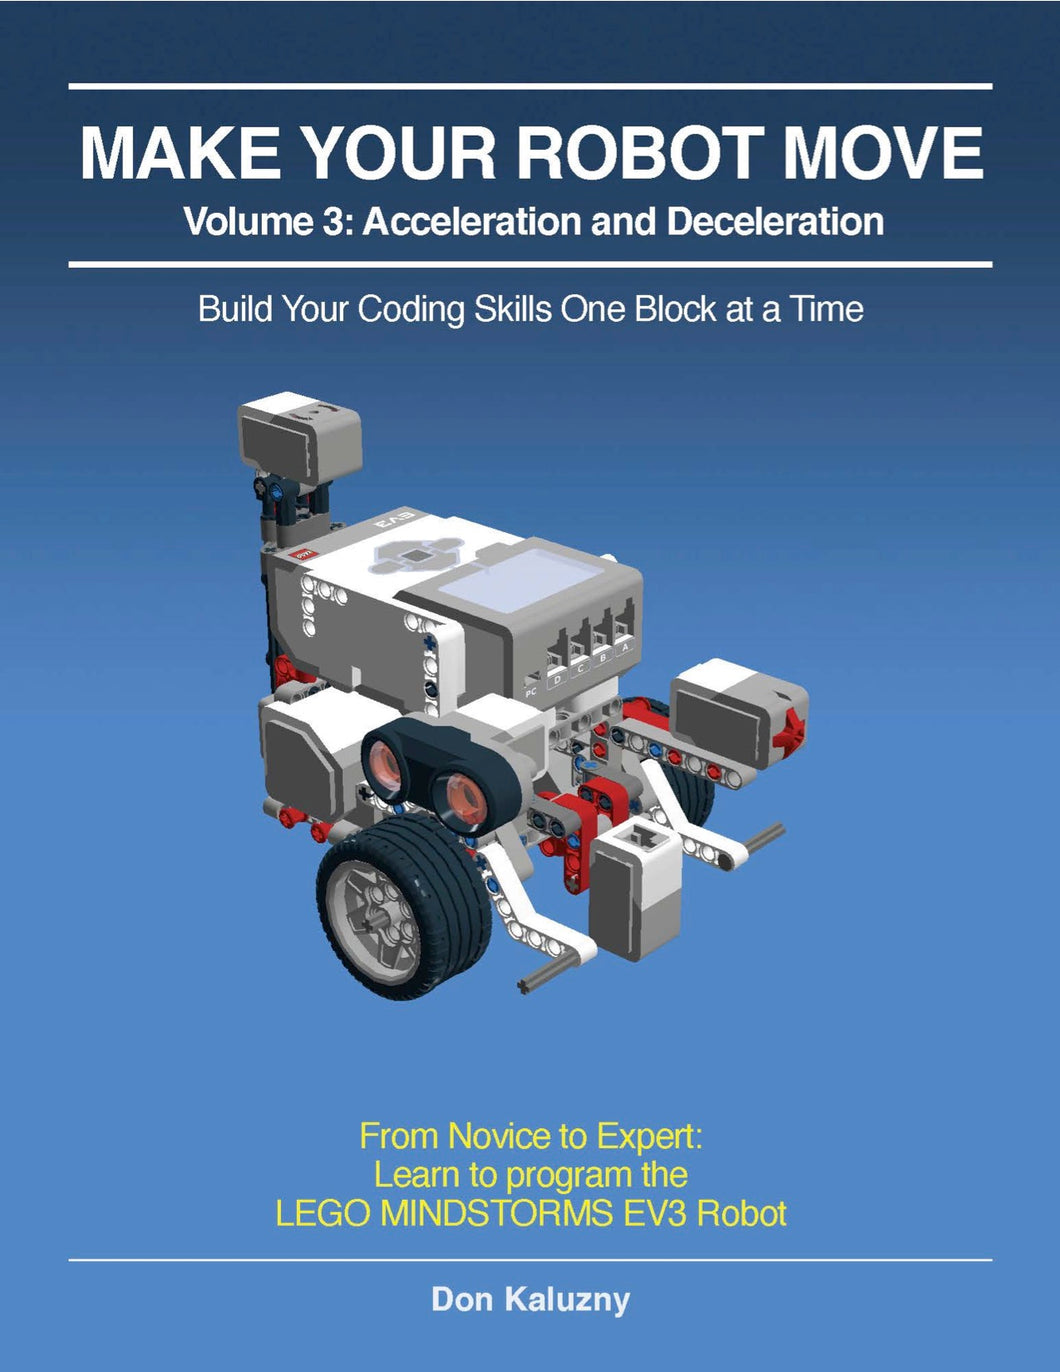 MAKE YOUR ROBOT MOVE: Volume 3 - Acceleration and Deceleration, EV3-G